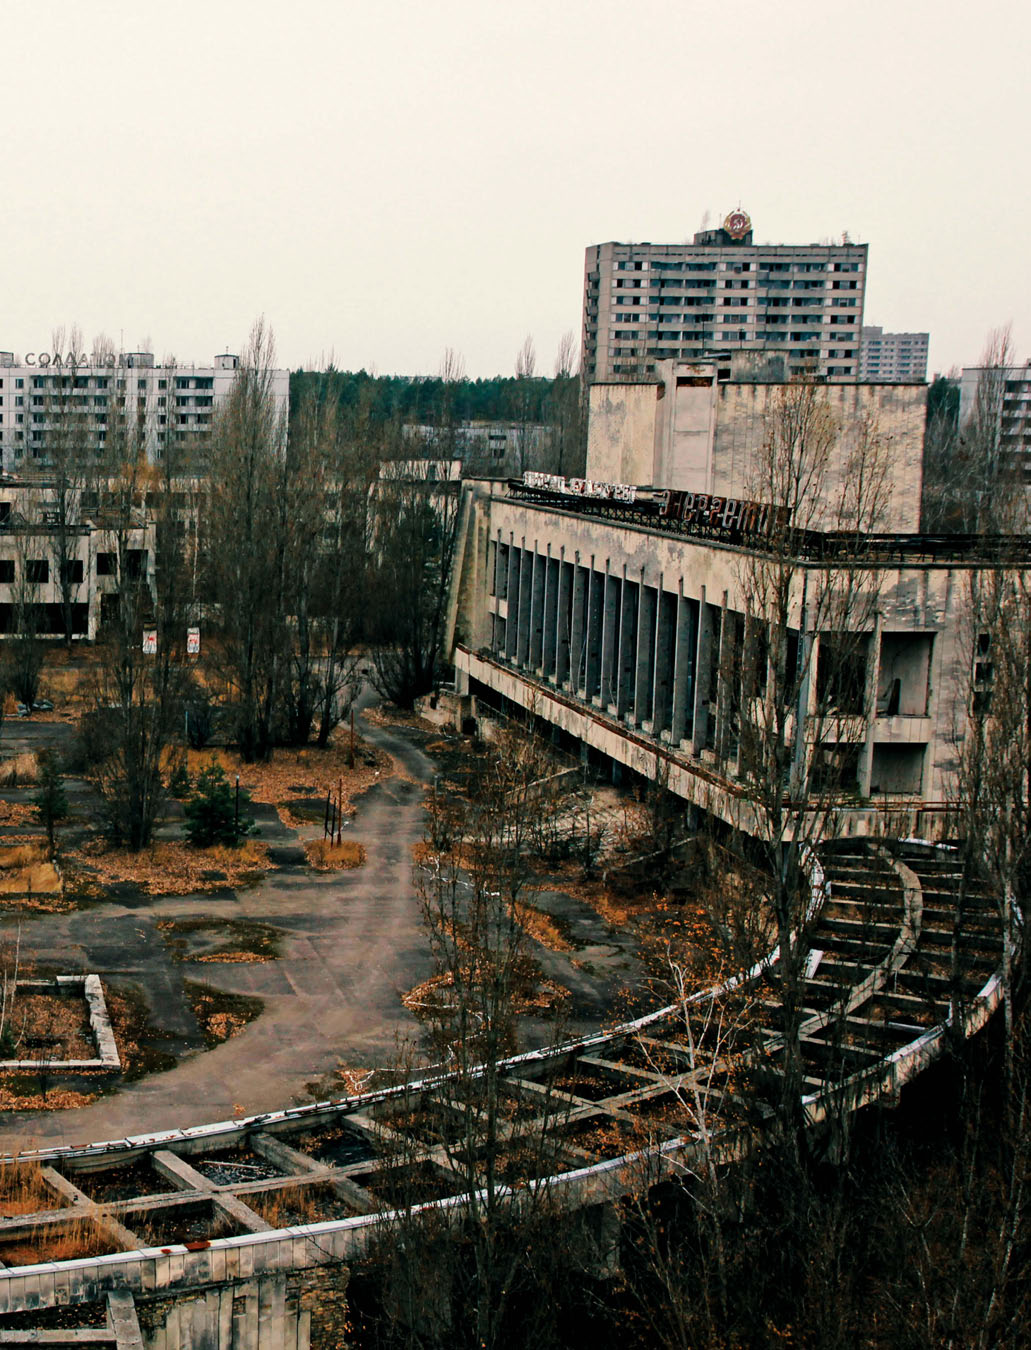 29 χρόνια μετά Στις 26 Απριλίου 1986 το πυρηνικό ατύχημα στο Τσερνόμπιλ σημάδεψε τη σύγχρονη παγκόσμια Ιστορία.